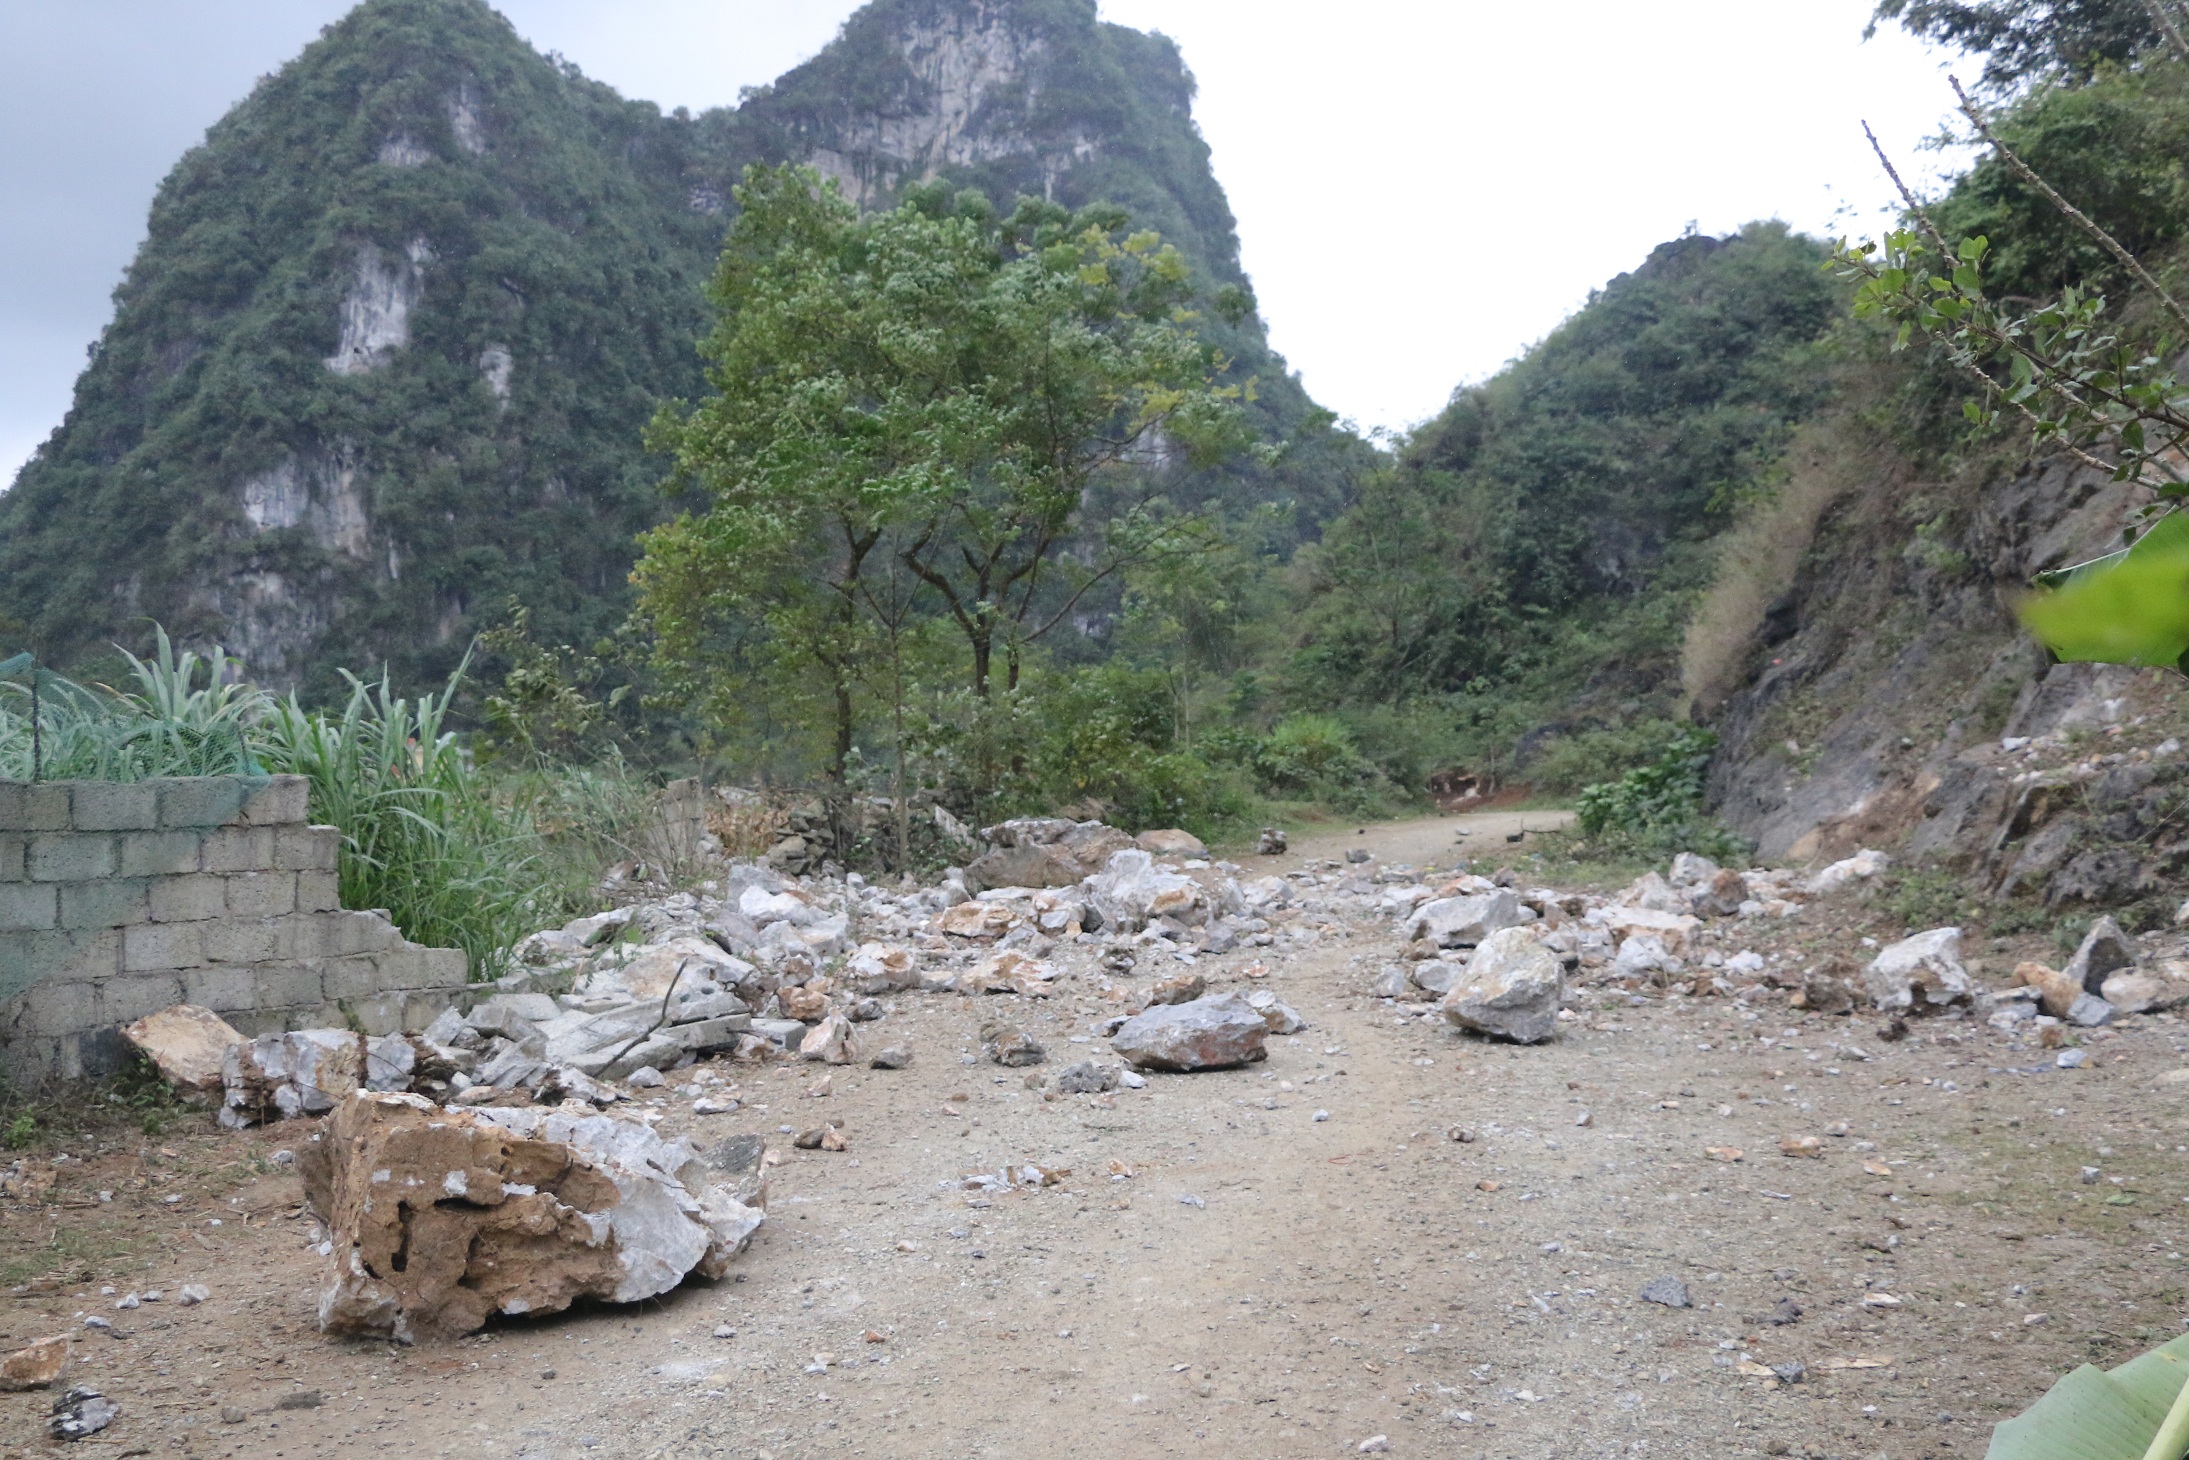 Nhiều ngọn núi tại khu vực biên giới xã Đàm Thuỷ sau các đợt dư chấn động đất có đất đá lở xuống làm tắc một số tuyến đường